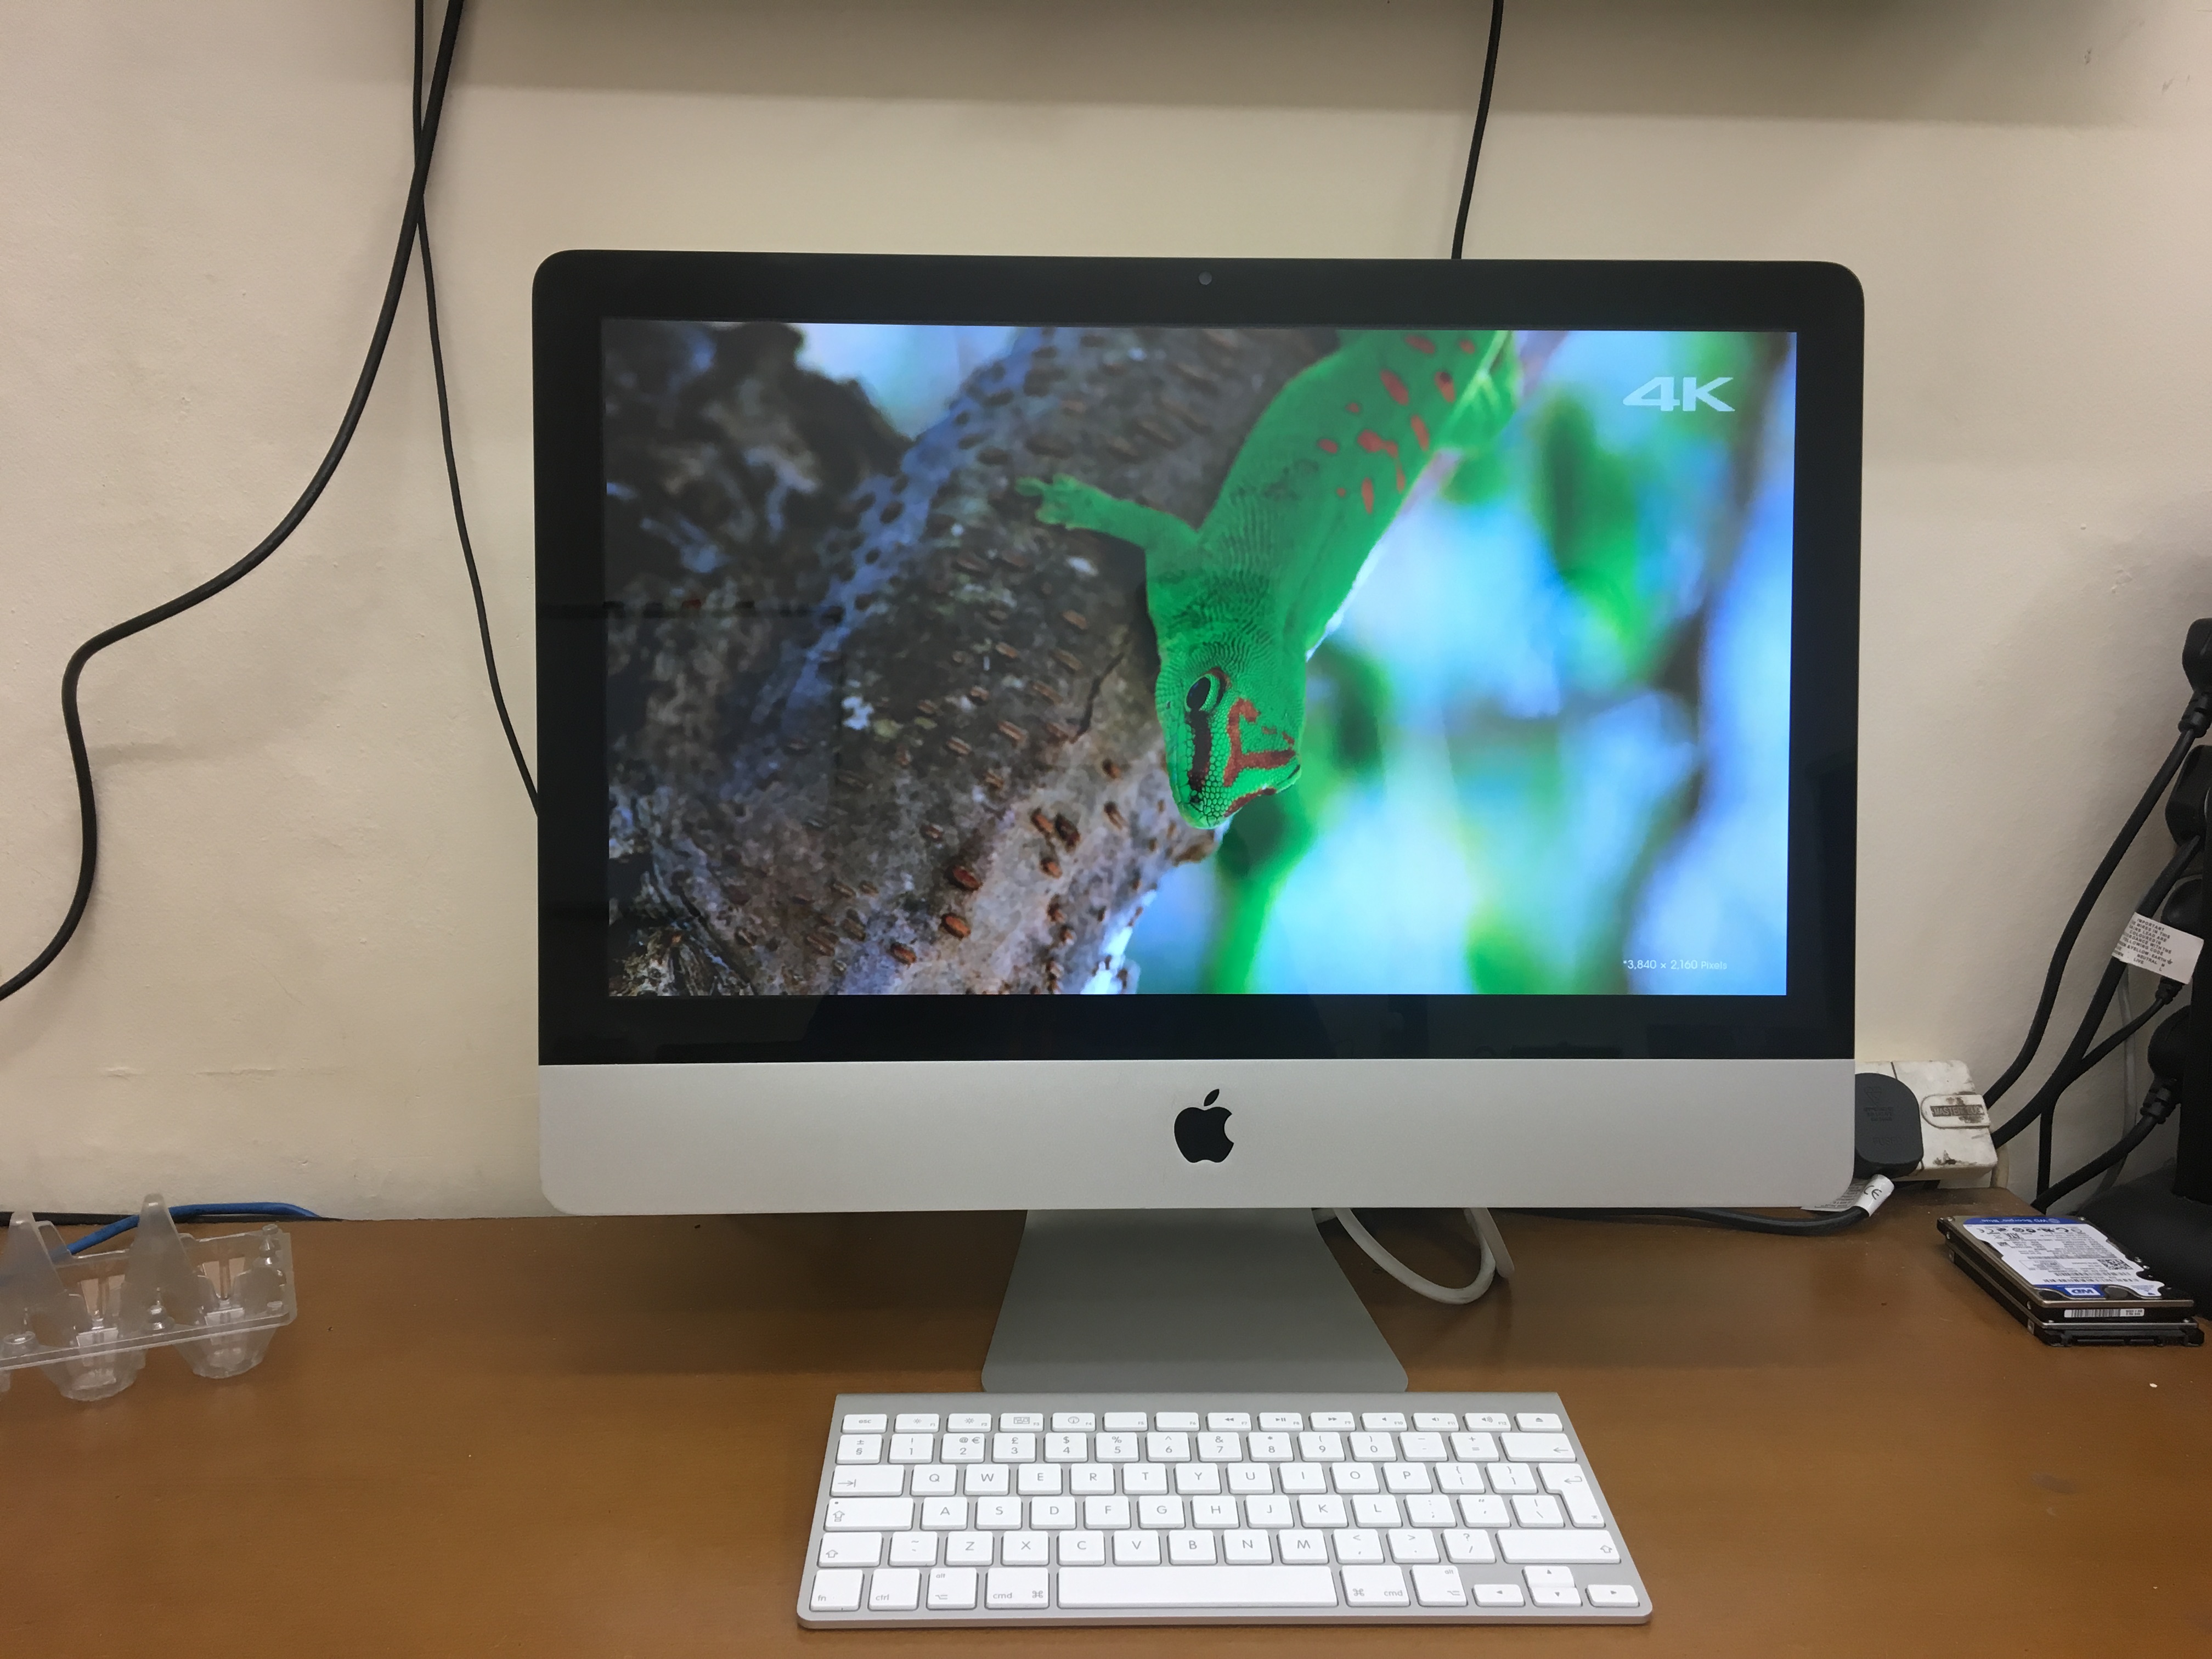 refurbished apple laptop for sale